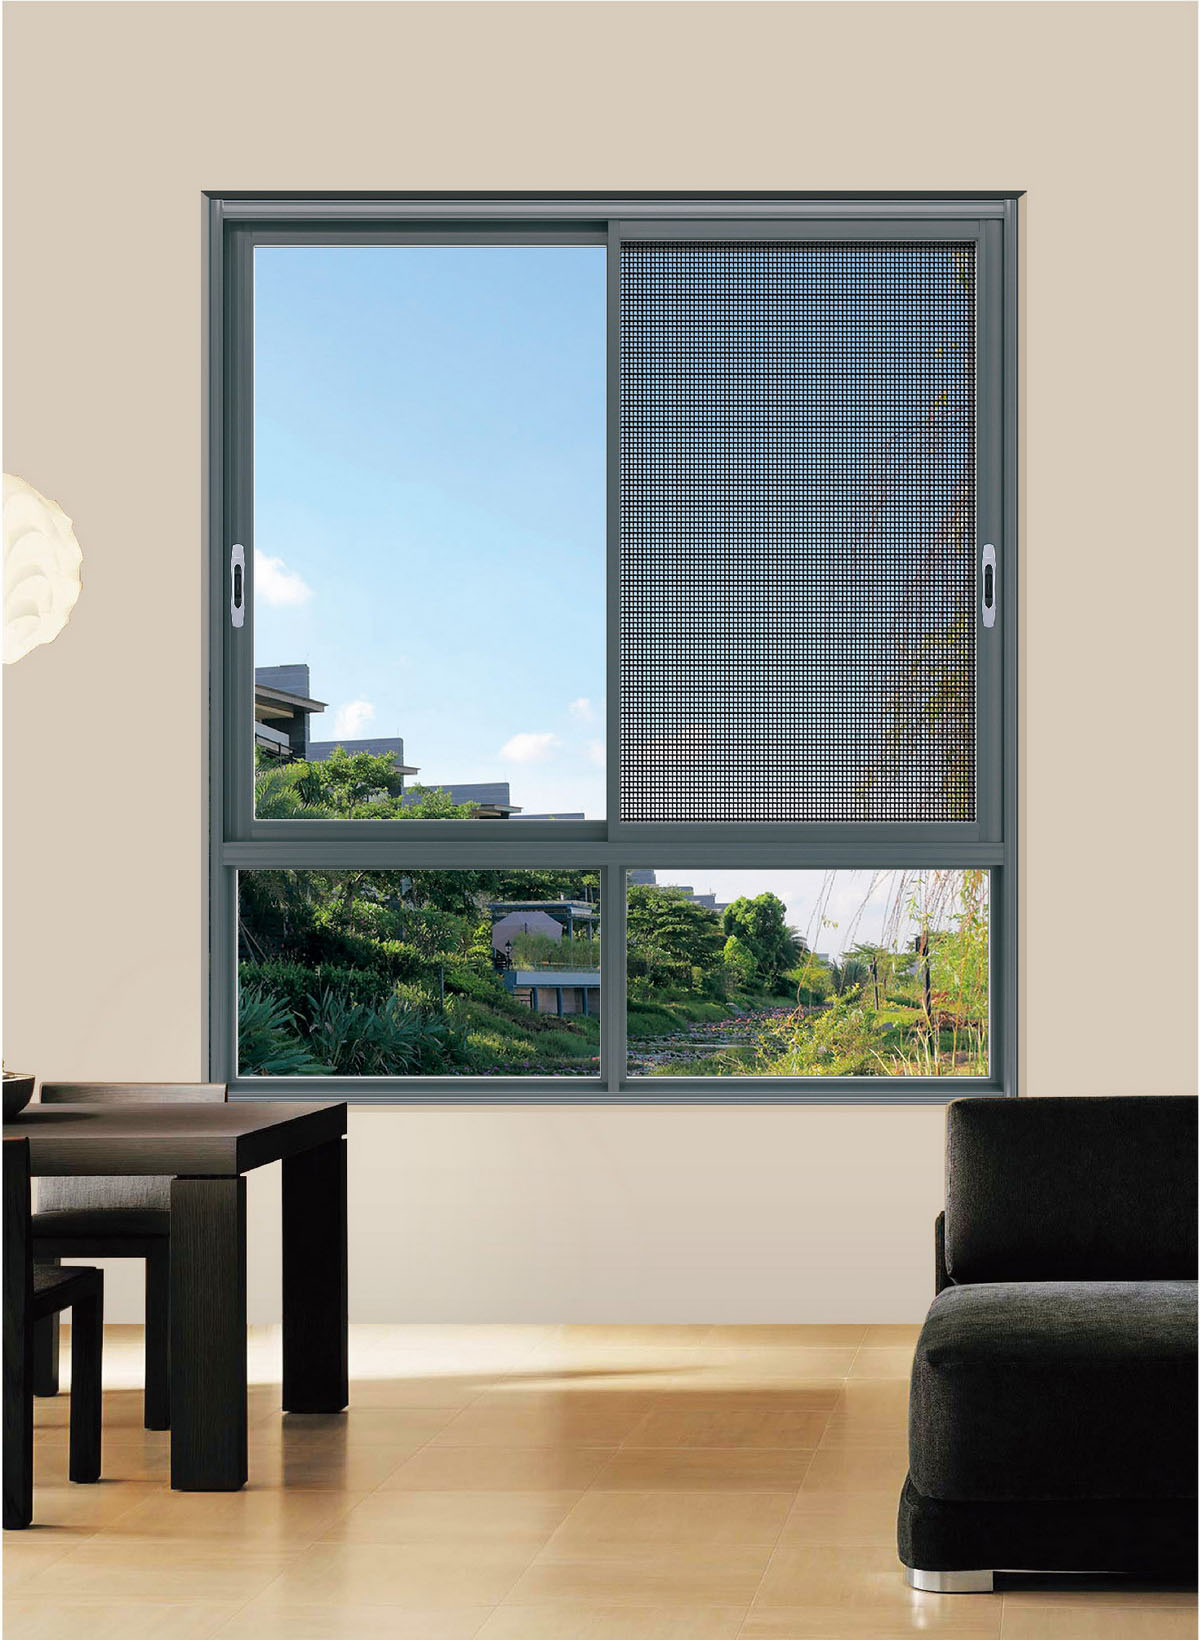 Door and window profiles: the main classification of door and window profiles